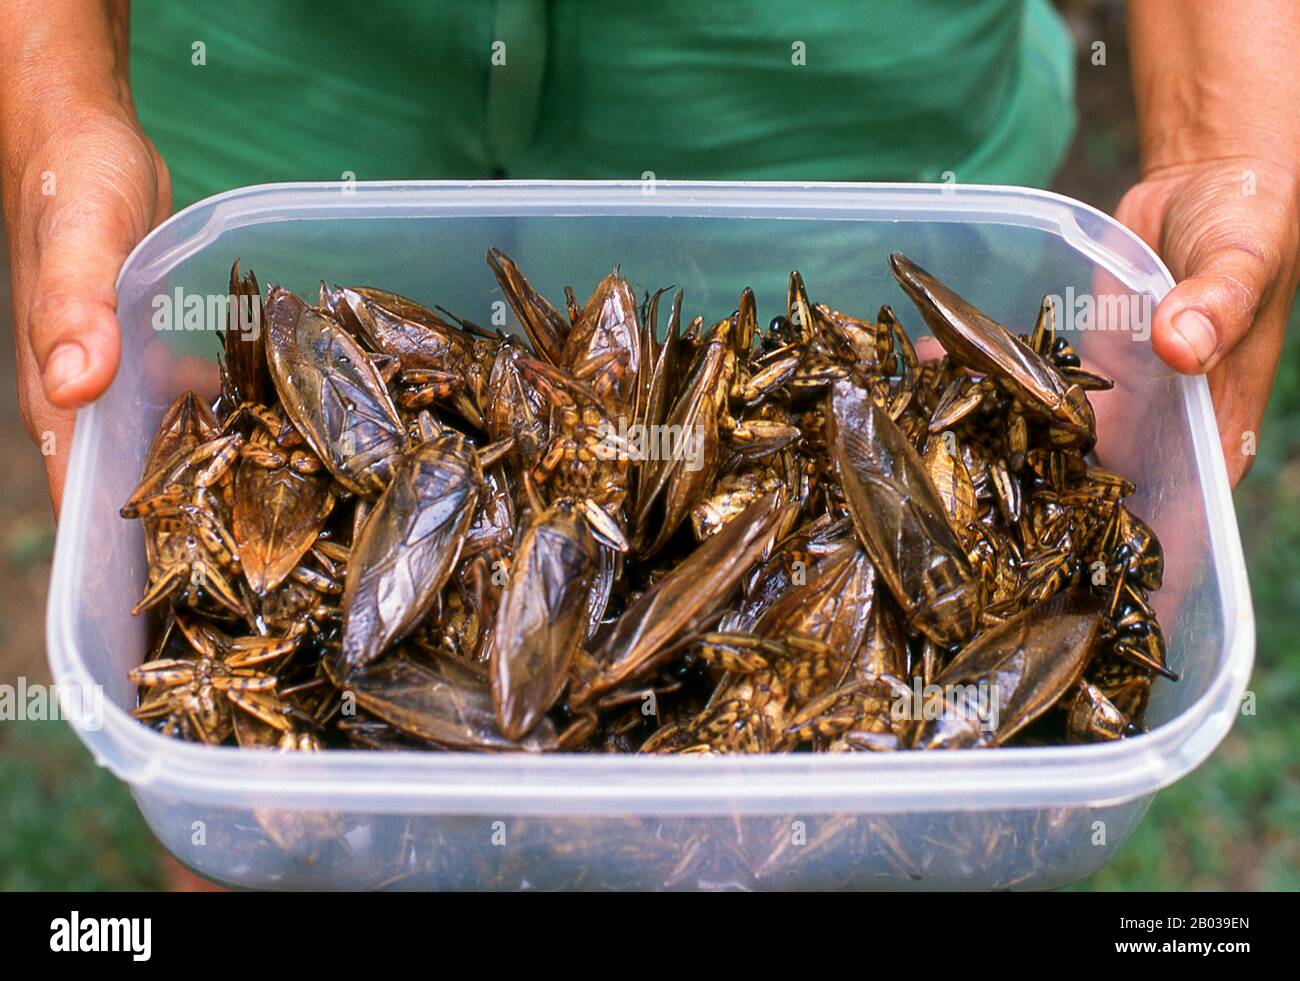 I giganteschi insetti d'acqua vengono consumati fritti e leggermente bolliti. L'essenza del bug può essere utilizzata anche in una varietà di paste a base di peperoncino e utilizzata come condimento. A parte la Thailandia, il bug è mangiato in Vietnam e nelle Filippine. Foto Stock